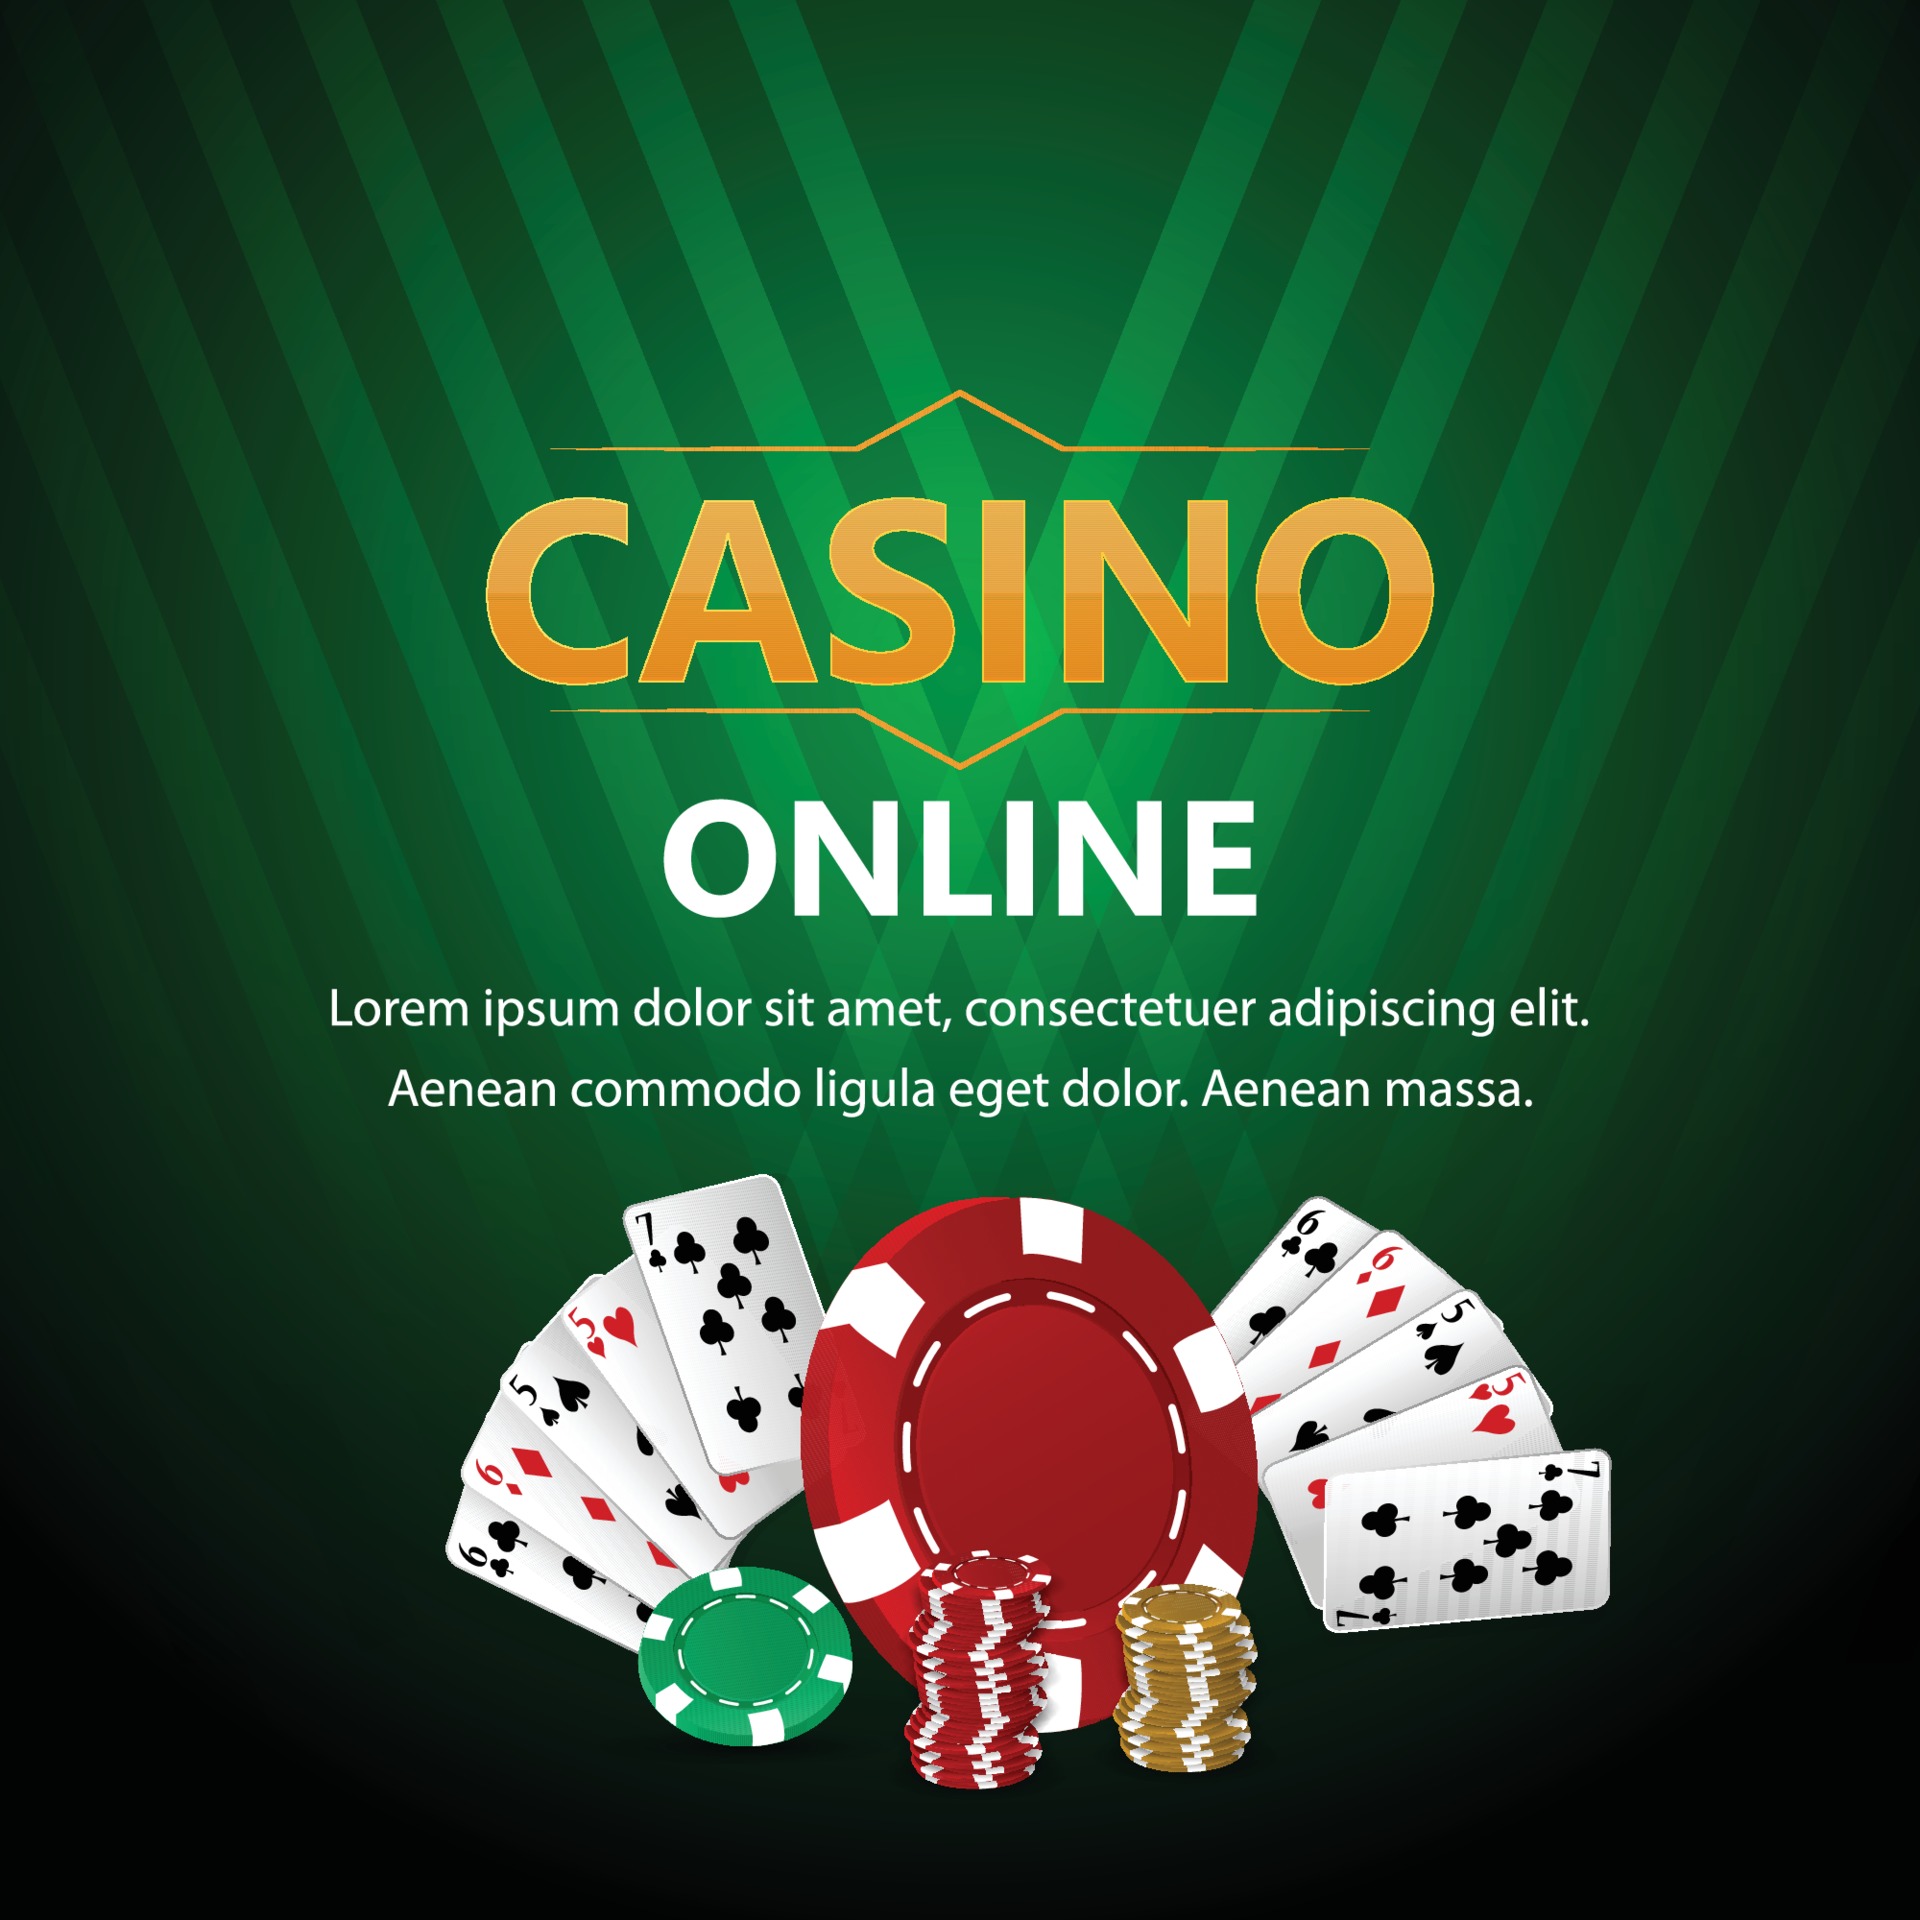 Haben Sie spielen Sie online Casino für Leidenschaft oder Geld gestartet?